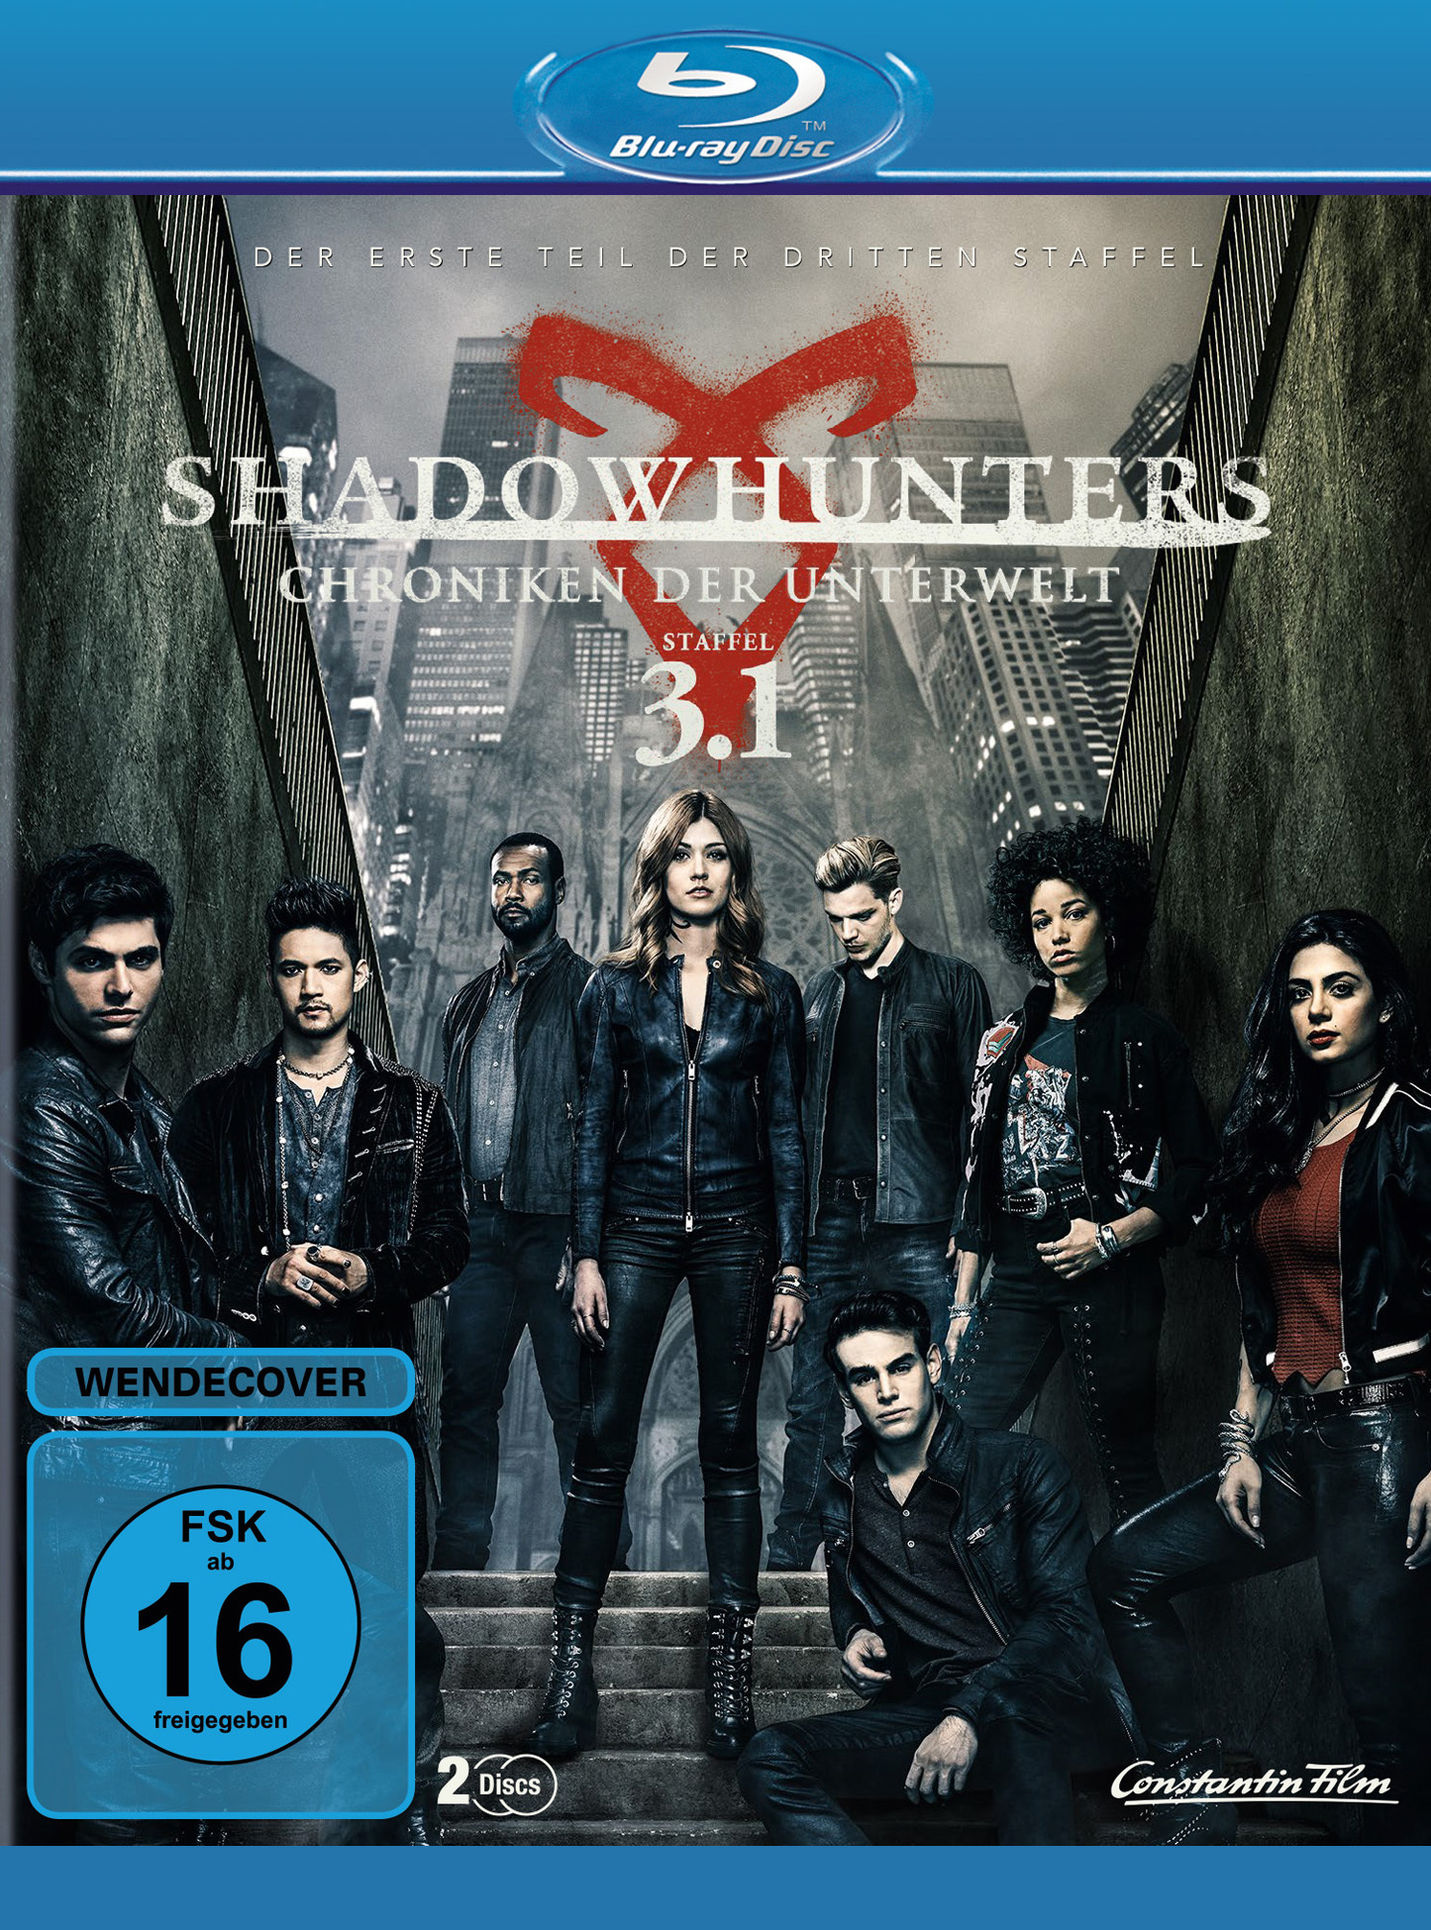 Shadowhunters: Chroniken der Unterwelt - Staffel 3.1 Film | Weltbild.de